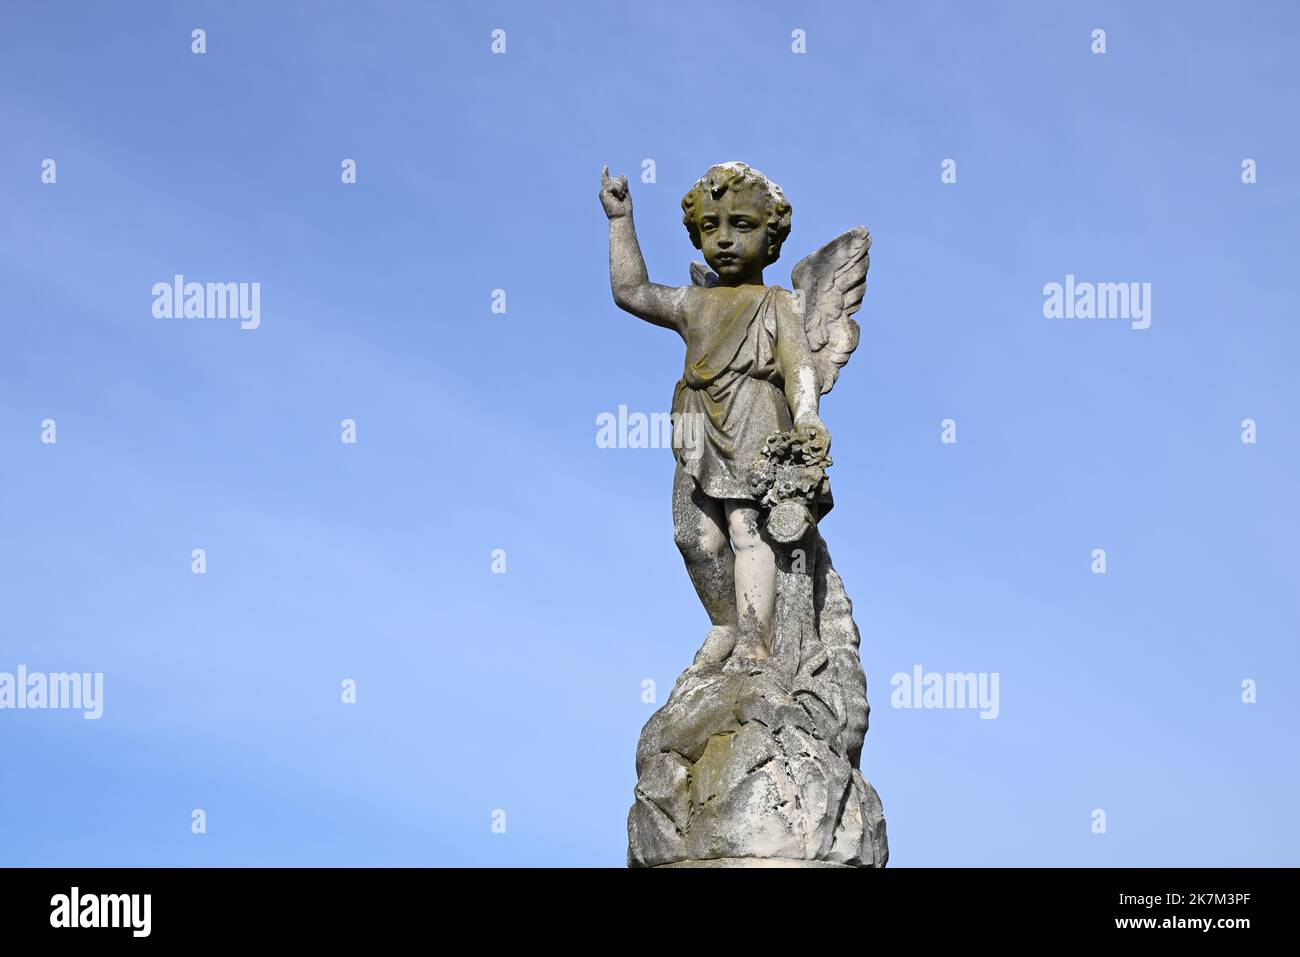 El querubín, o ángel niño, escultura hecha de piedra, apuntando hacia los cielos con el cielo azul en el fondo Foto de stock